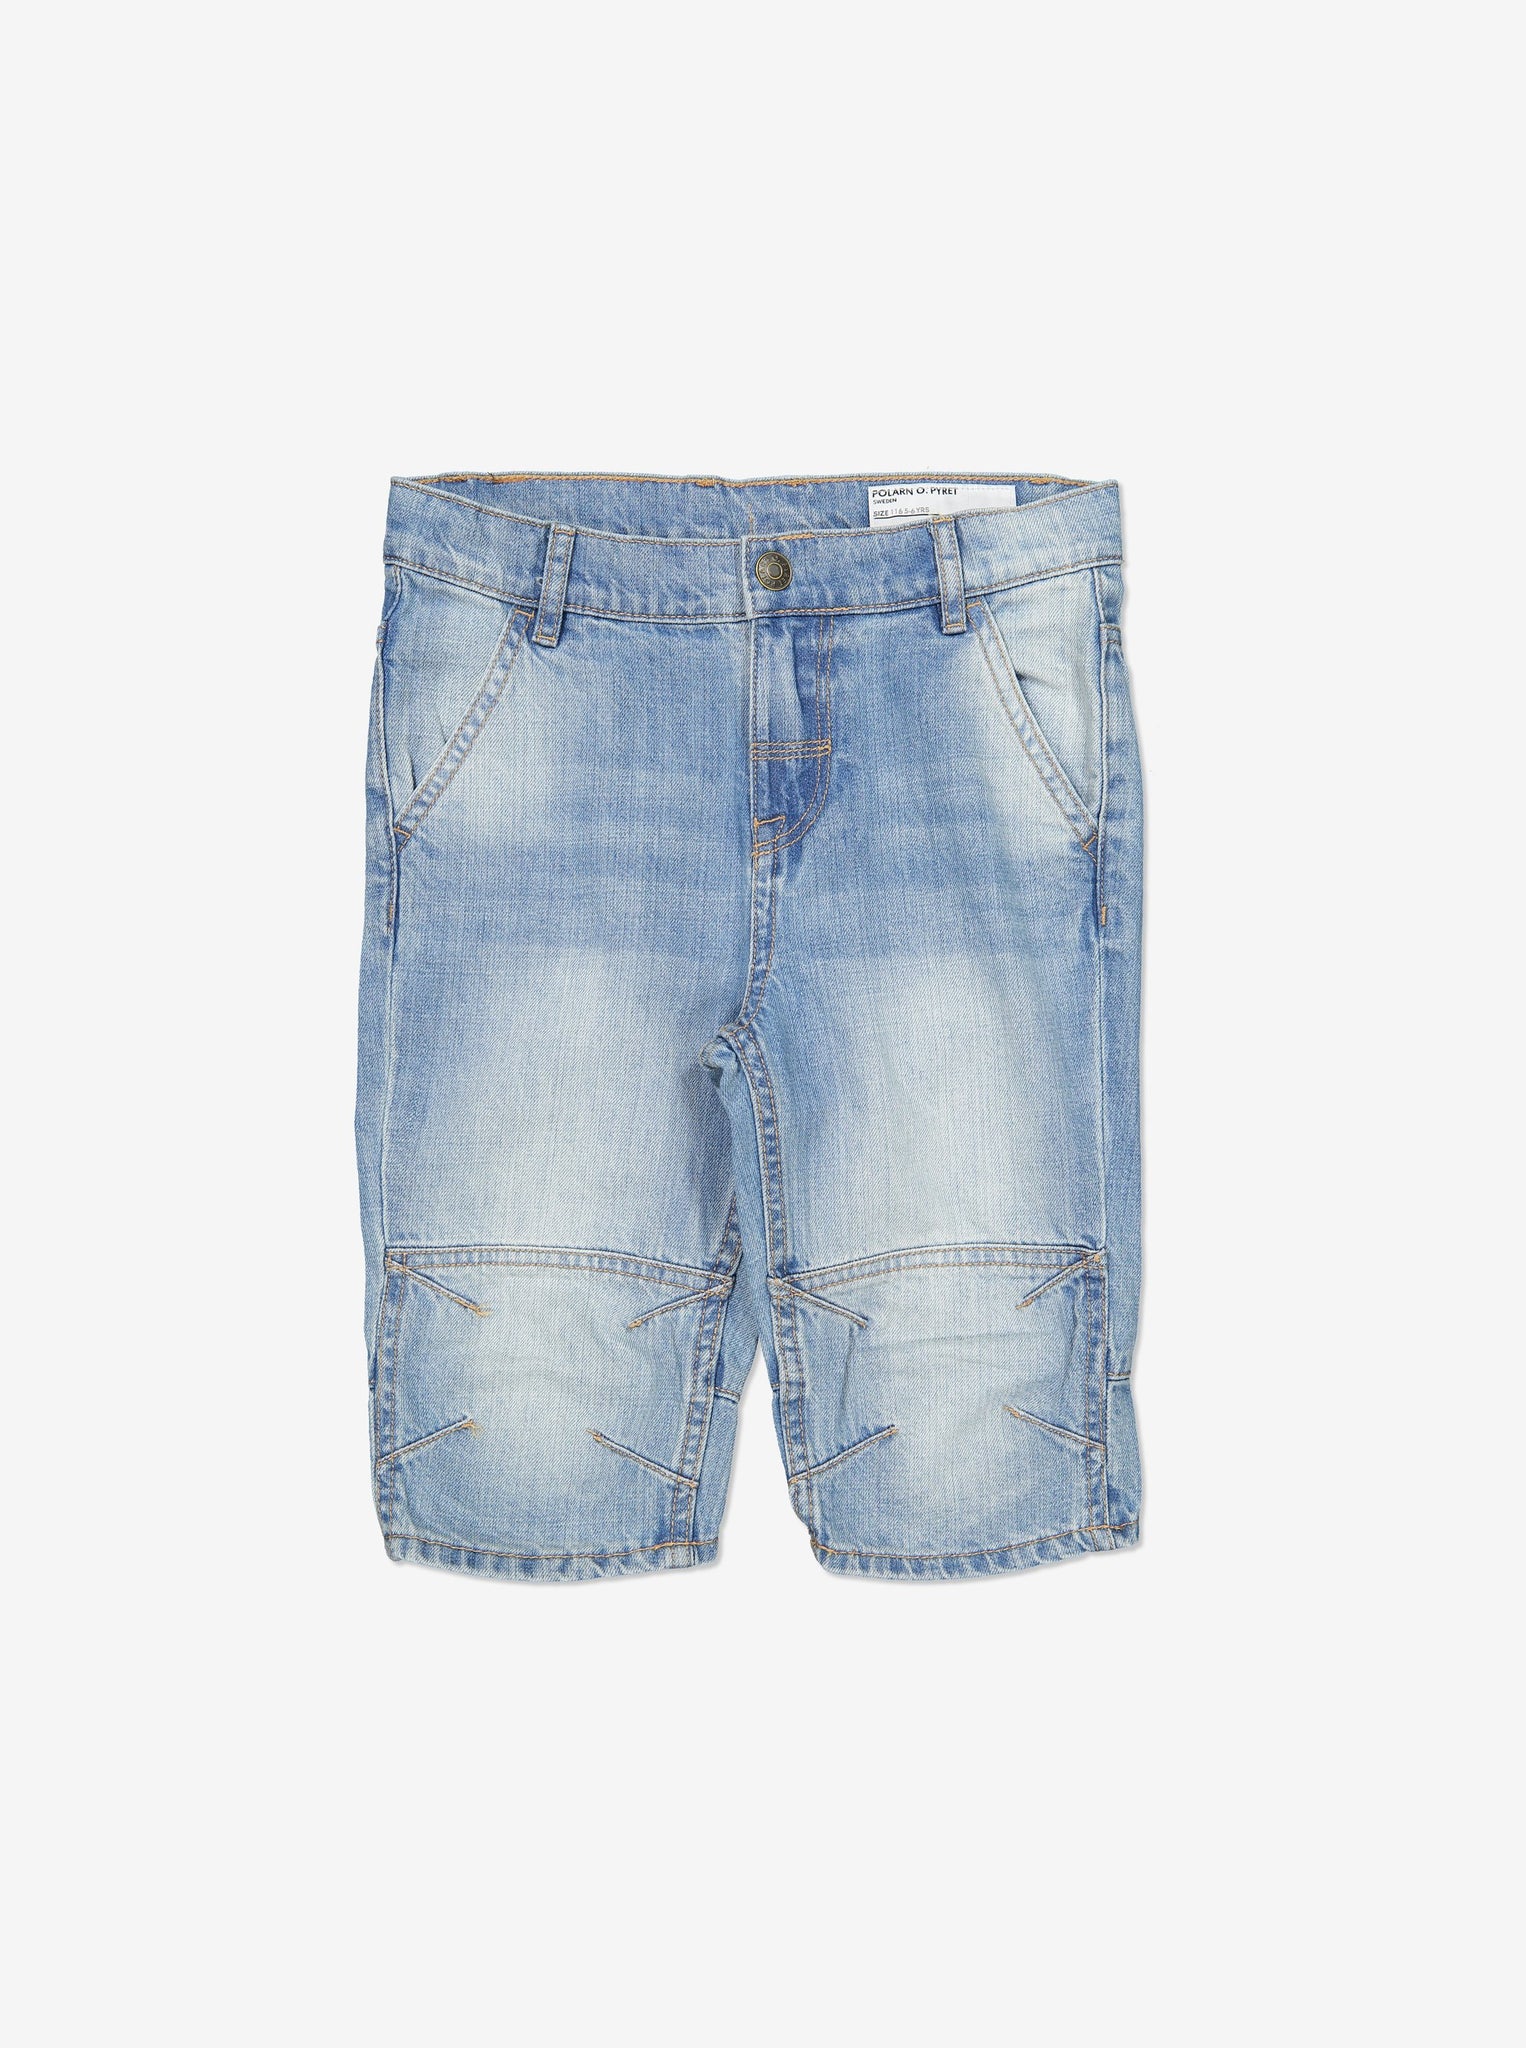 Boy Blue GOTS Organic Denim Shorts